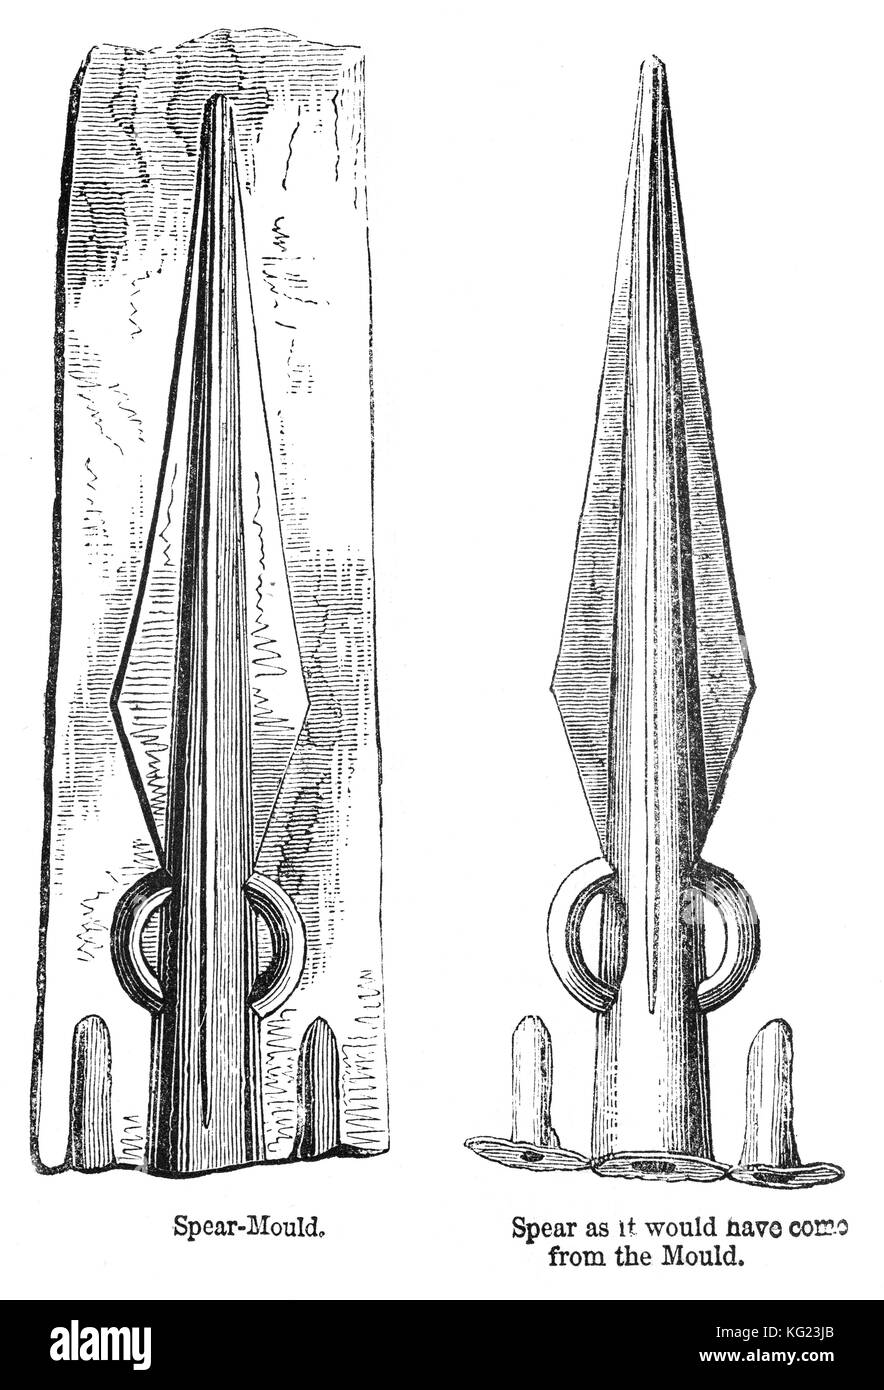 Una lanza de molde y una lanza de cobre obtenidas a partir de él. Principios británico de armas del siglo I A.C. Foto de stock